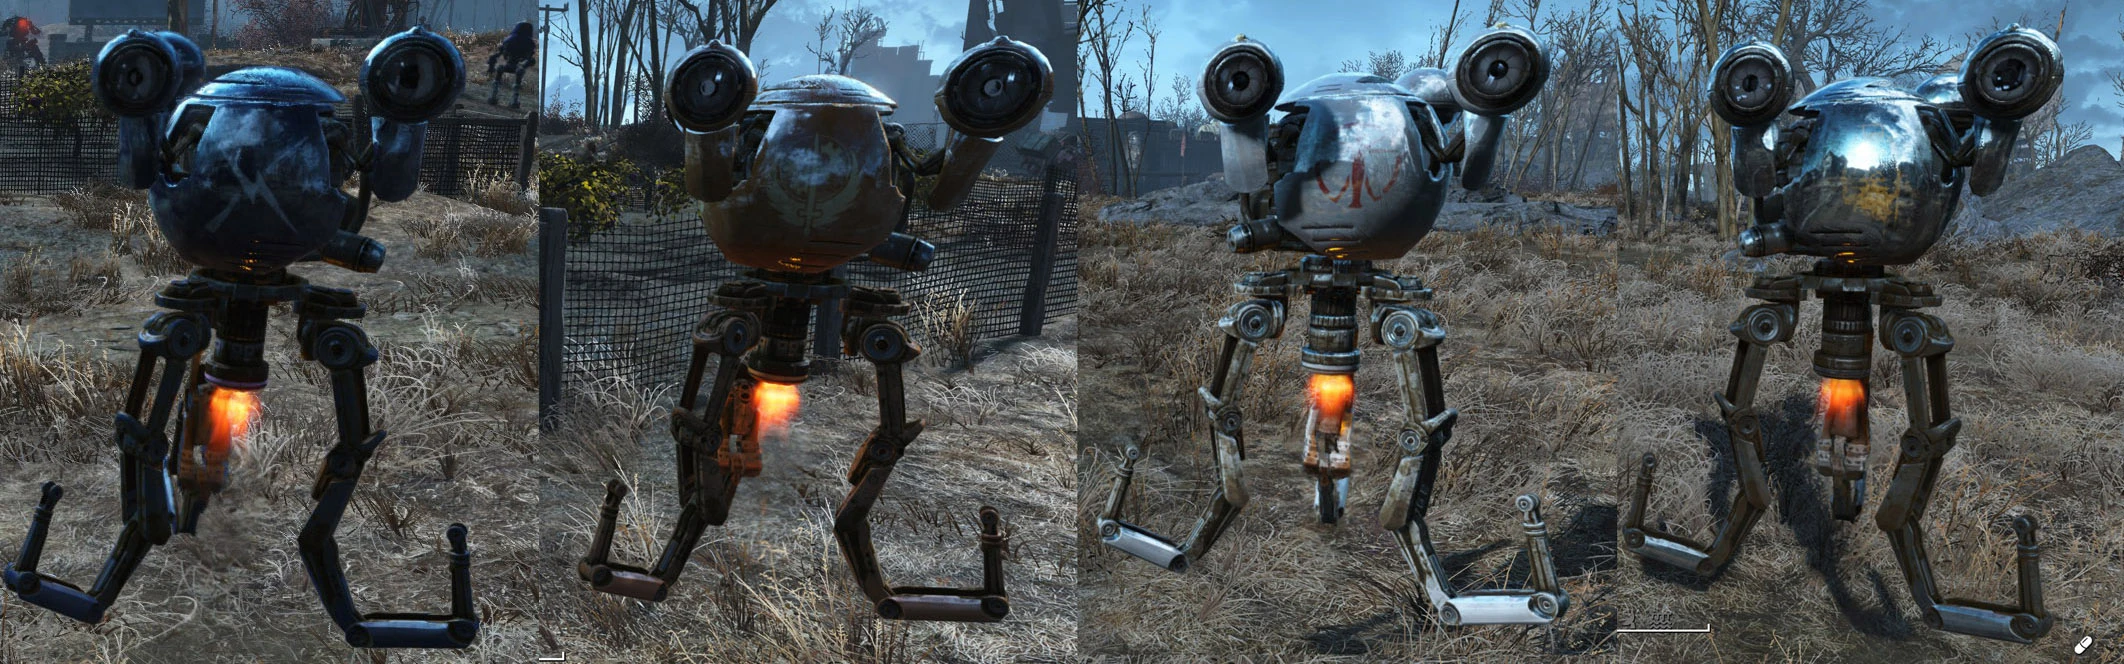 Fallout 4 automatron робот фото 73